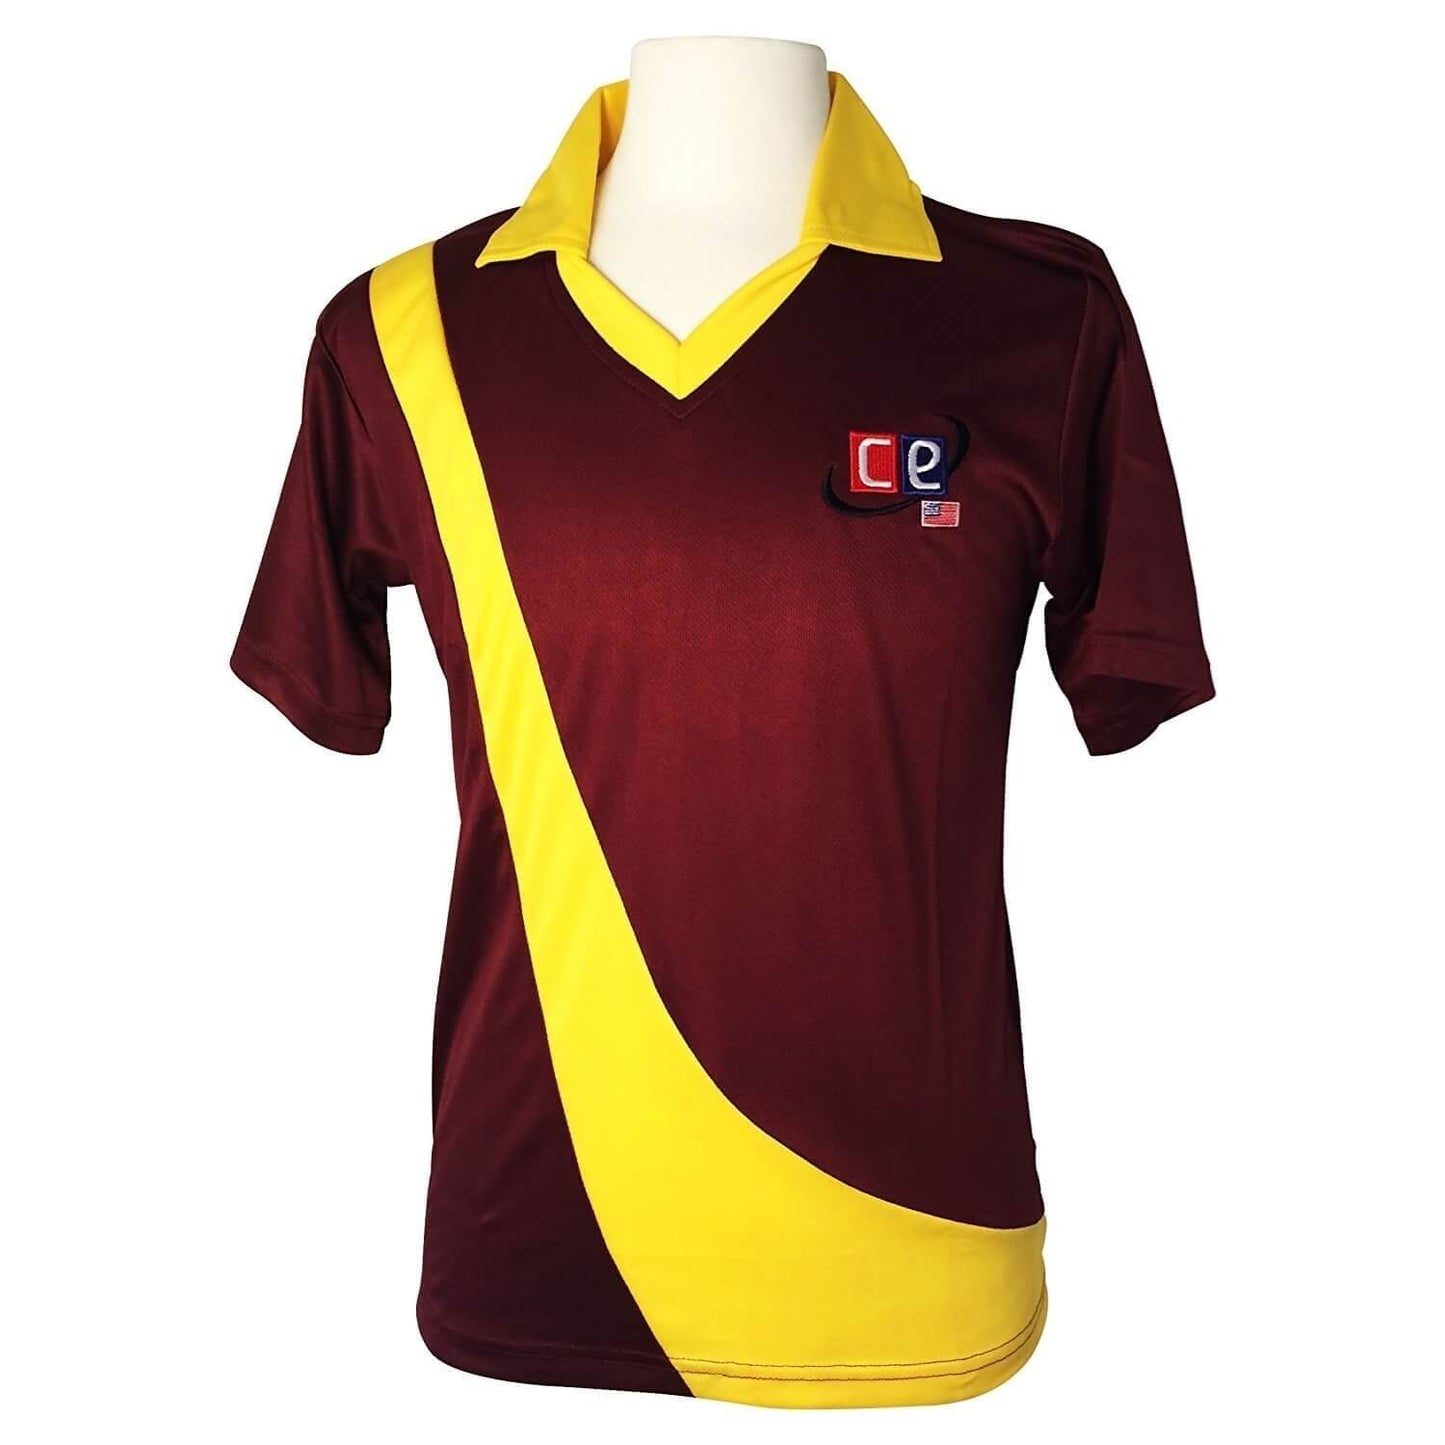 Colored Cricket Uniform West Indies Colors Shirts